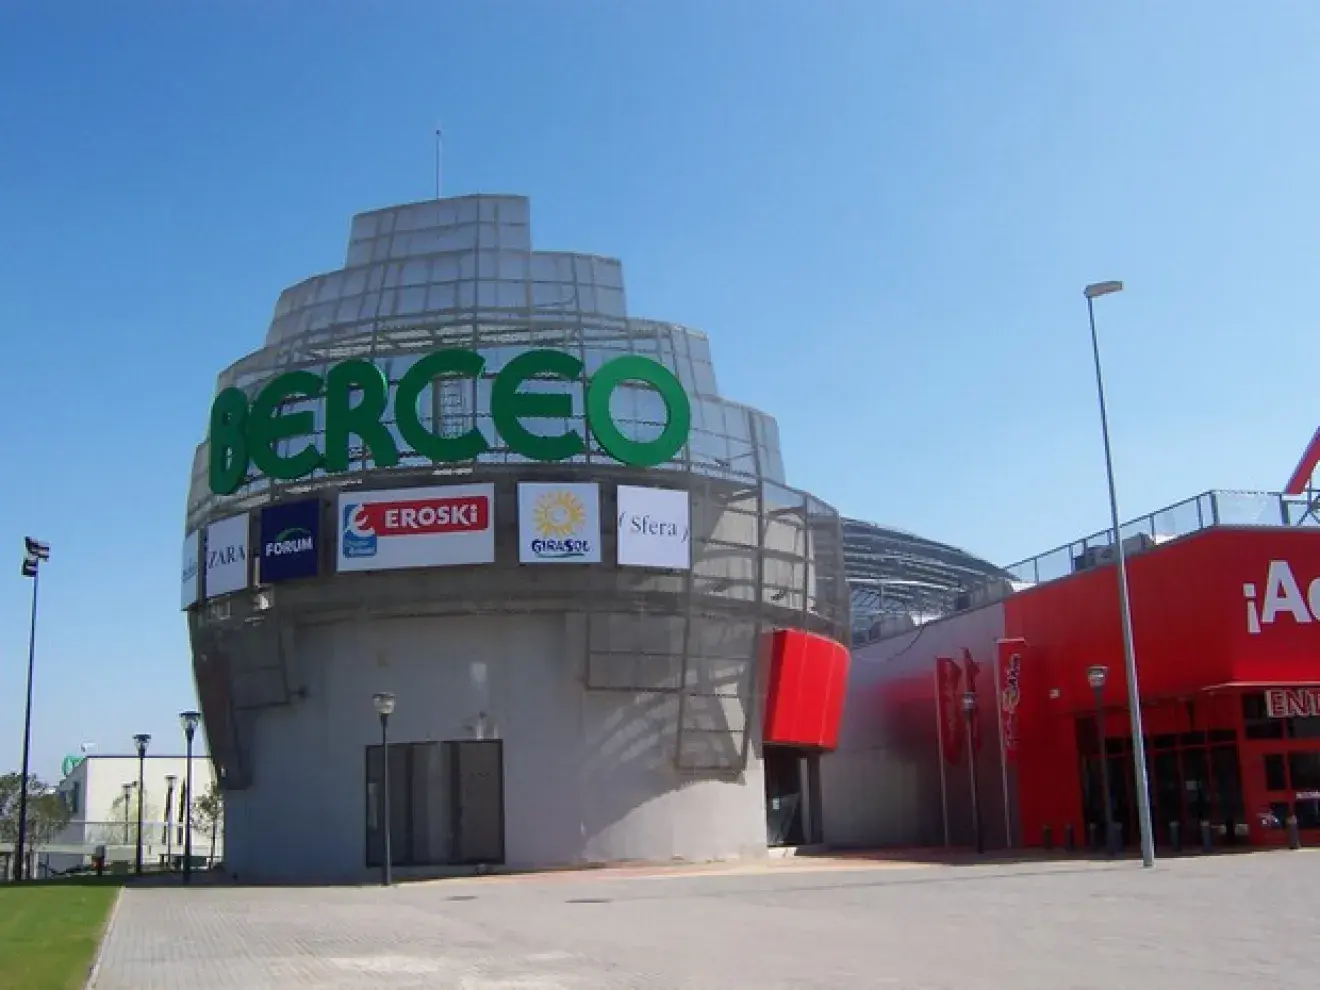 Centro Comercial Berceo - Logrono